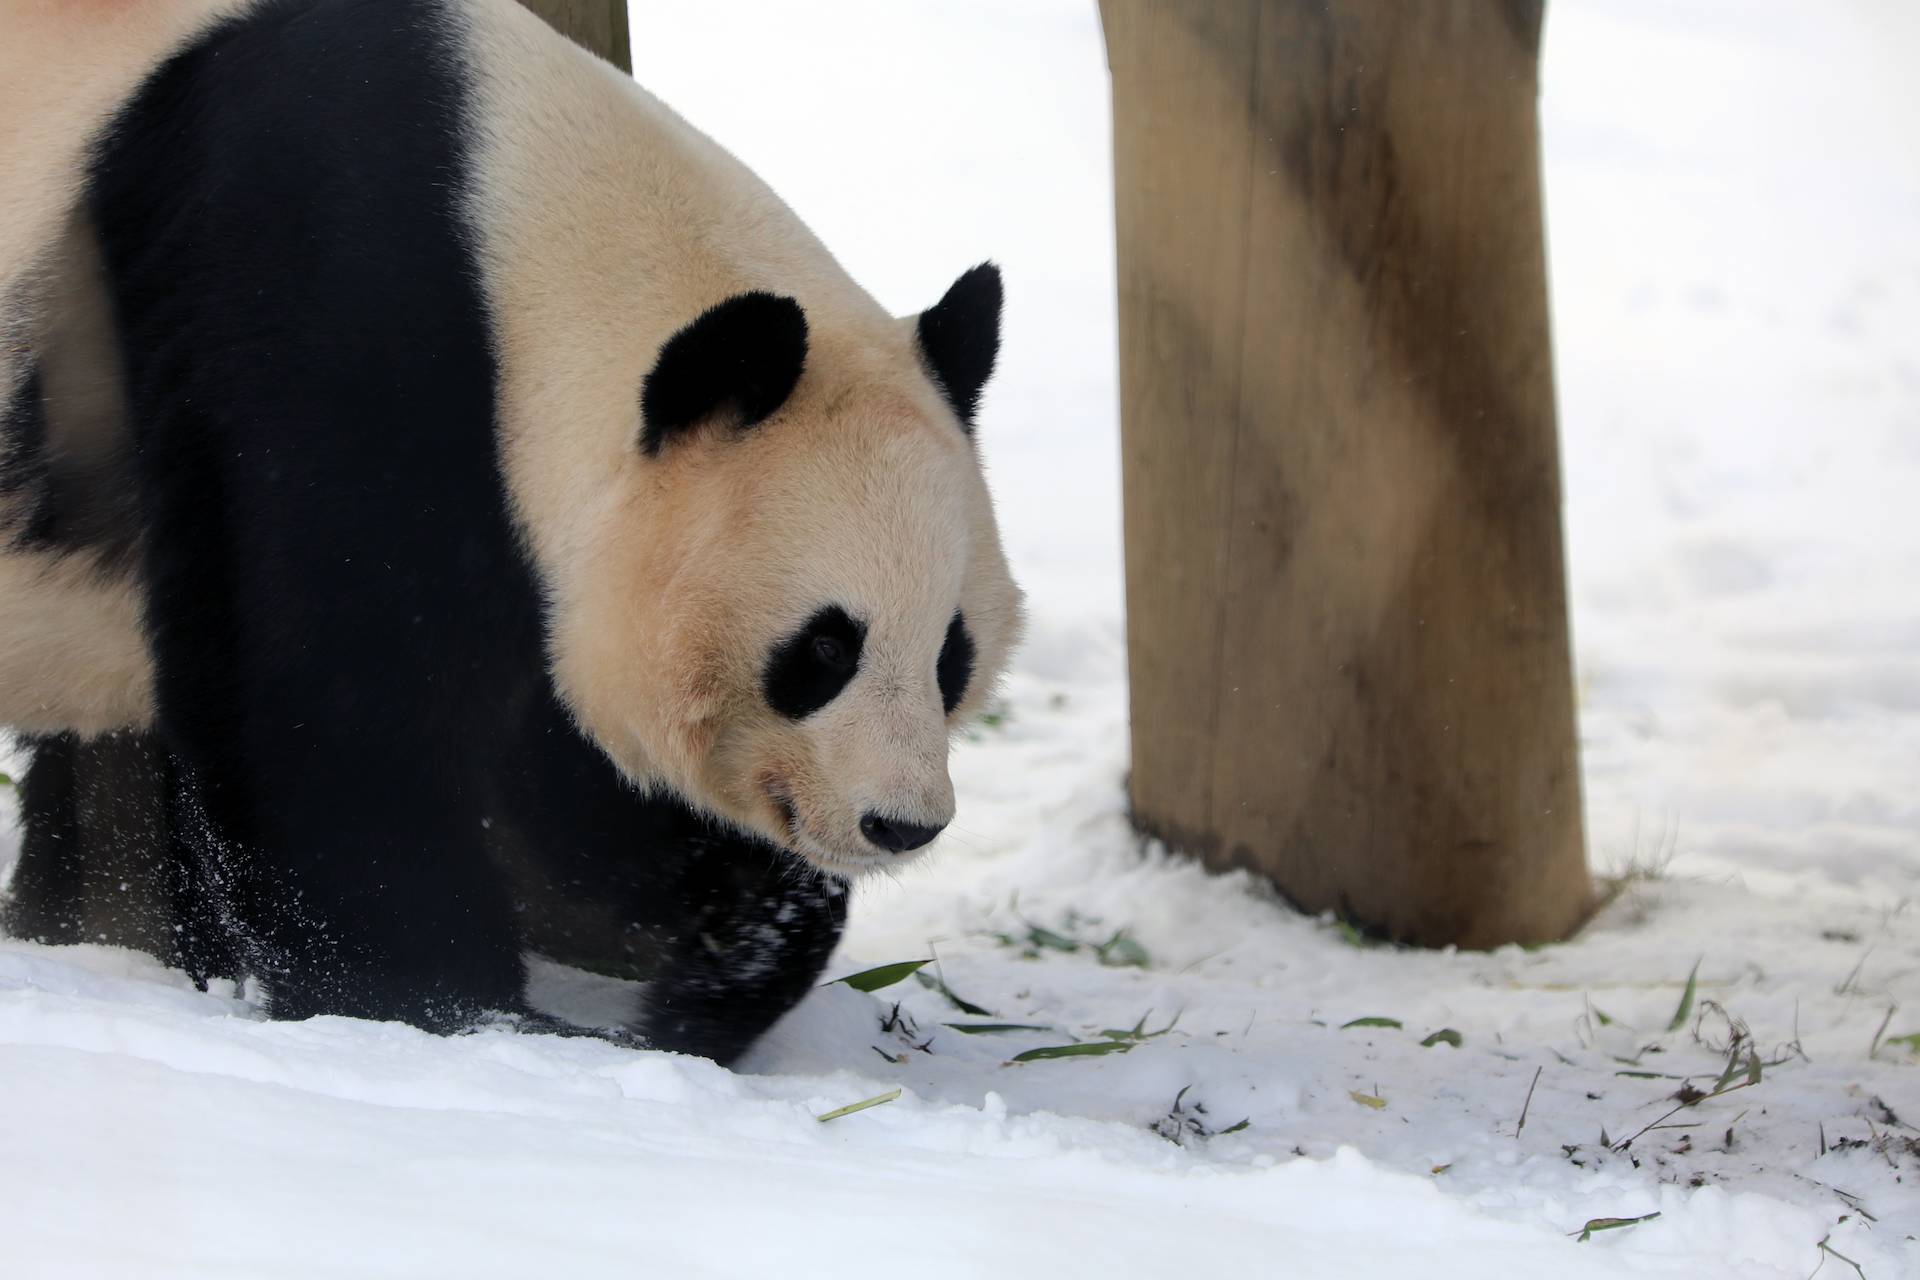 Giant panda walking through snow in enclosure near climbing frame